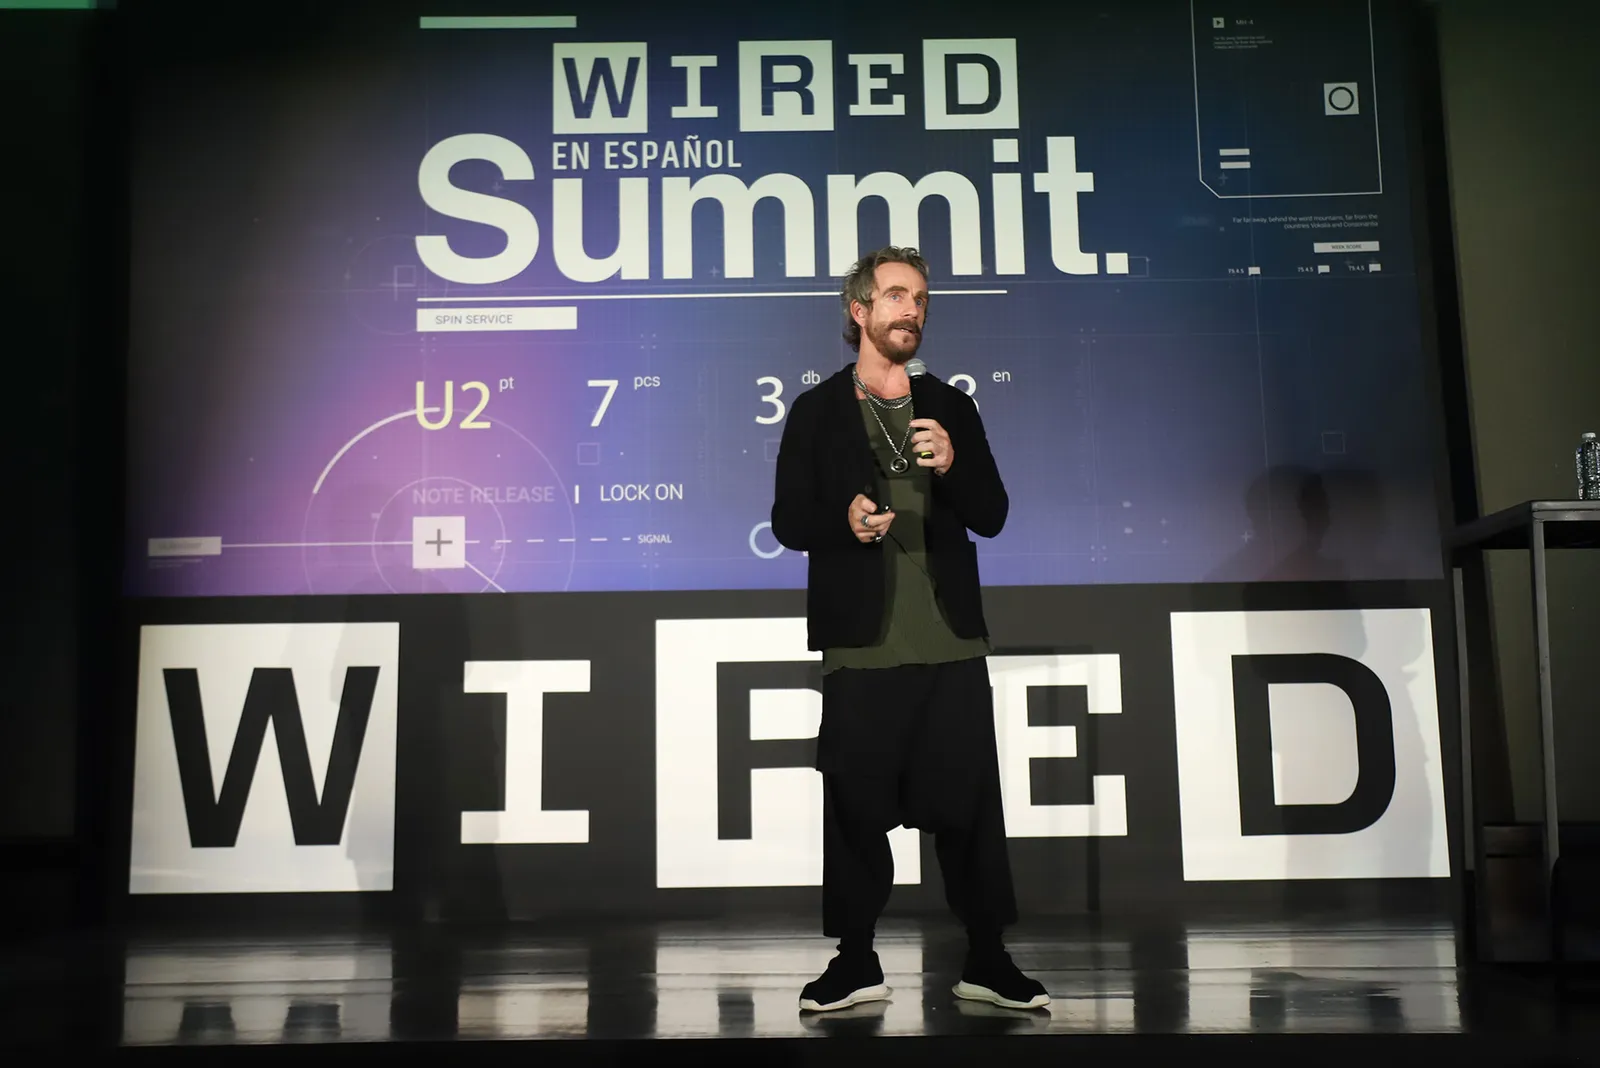 Michel Rojkind wired summit 2023